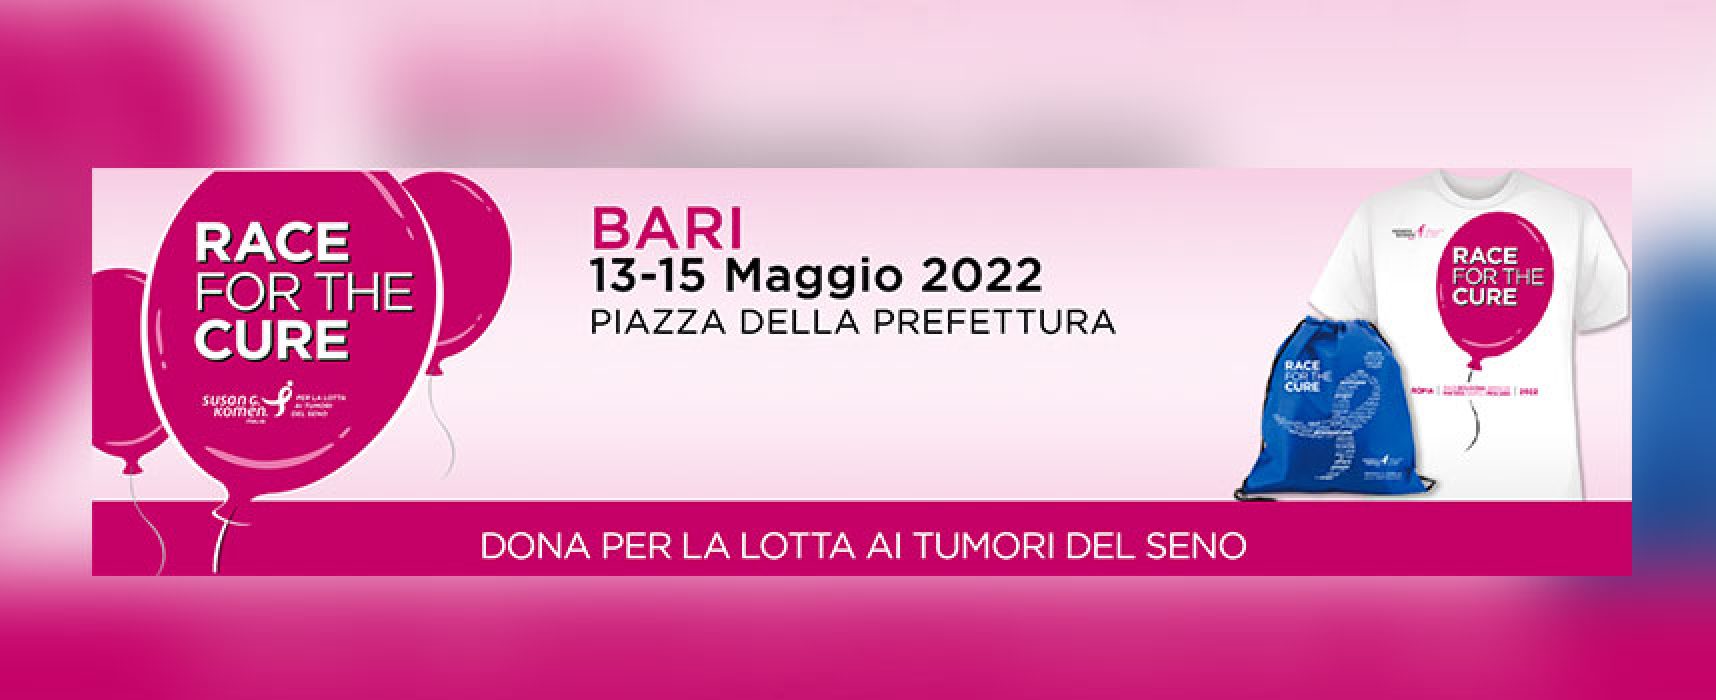 Race for The Cure 2022, si avvicina la tappa di Bari / INFO e ISCRIZIONE